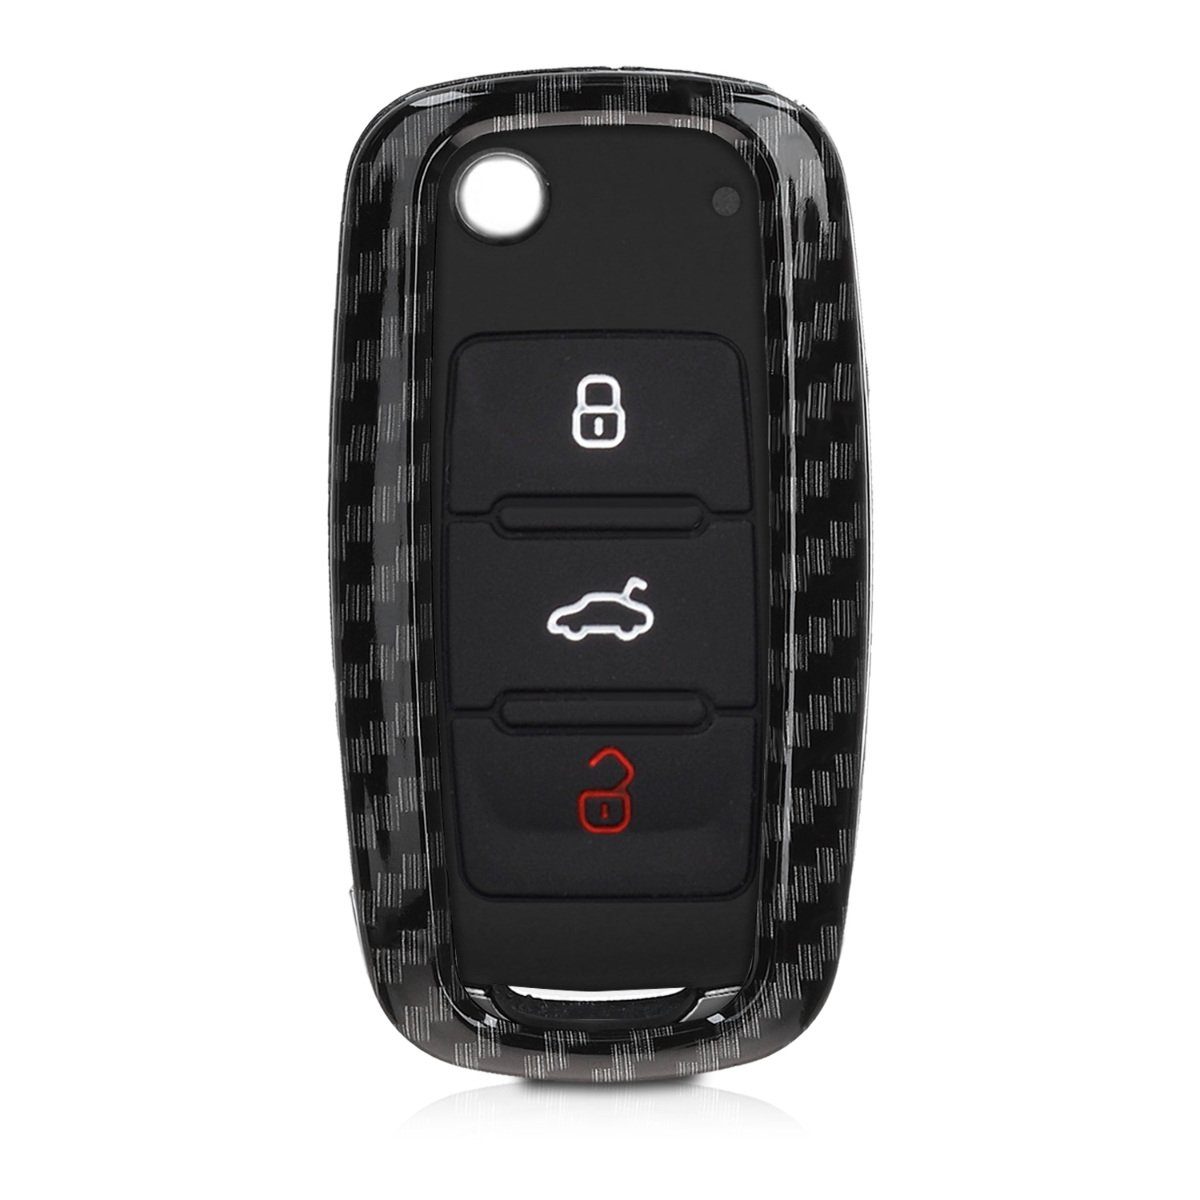 Hülle Skoda Hardcover VW Seat, Autoschlüssel Schwarz kwmobile Schutzhülle für Schlüsseltasche Schlüsselhülle